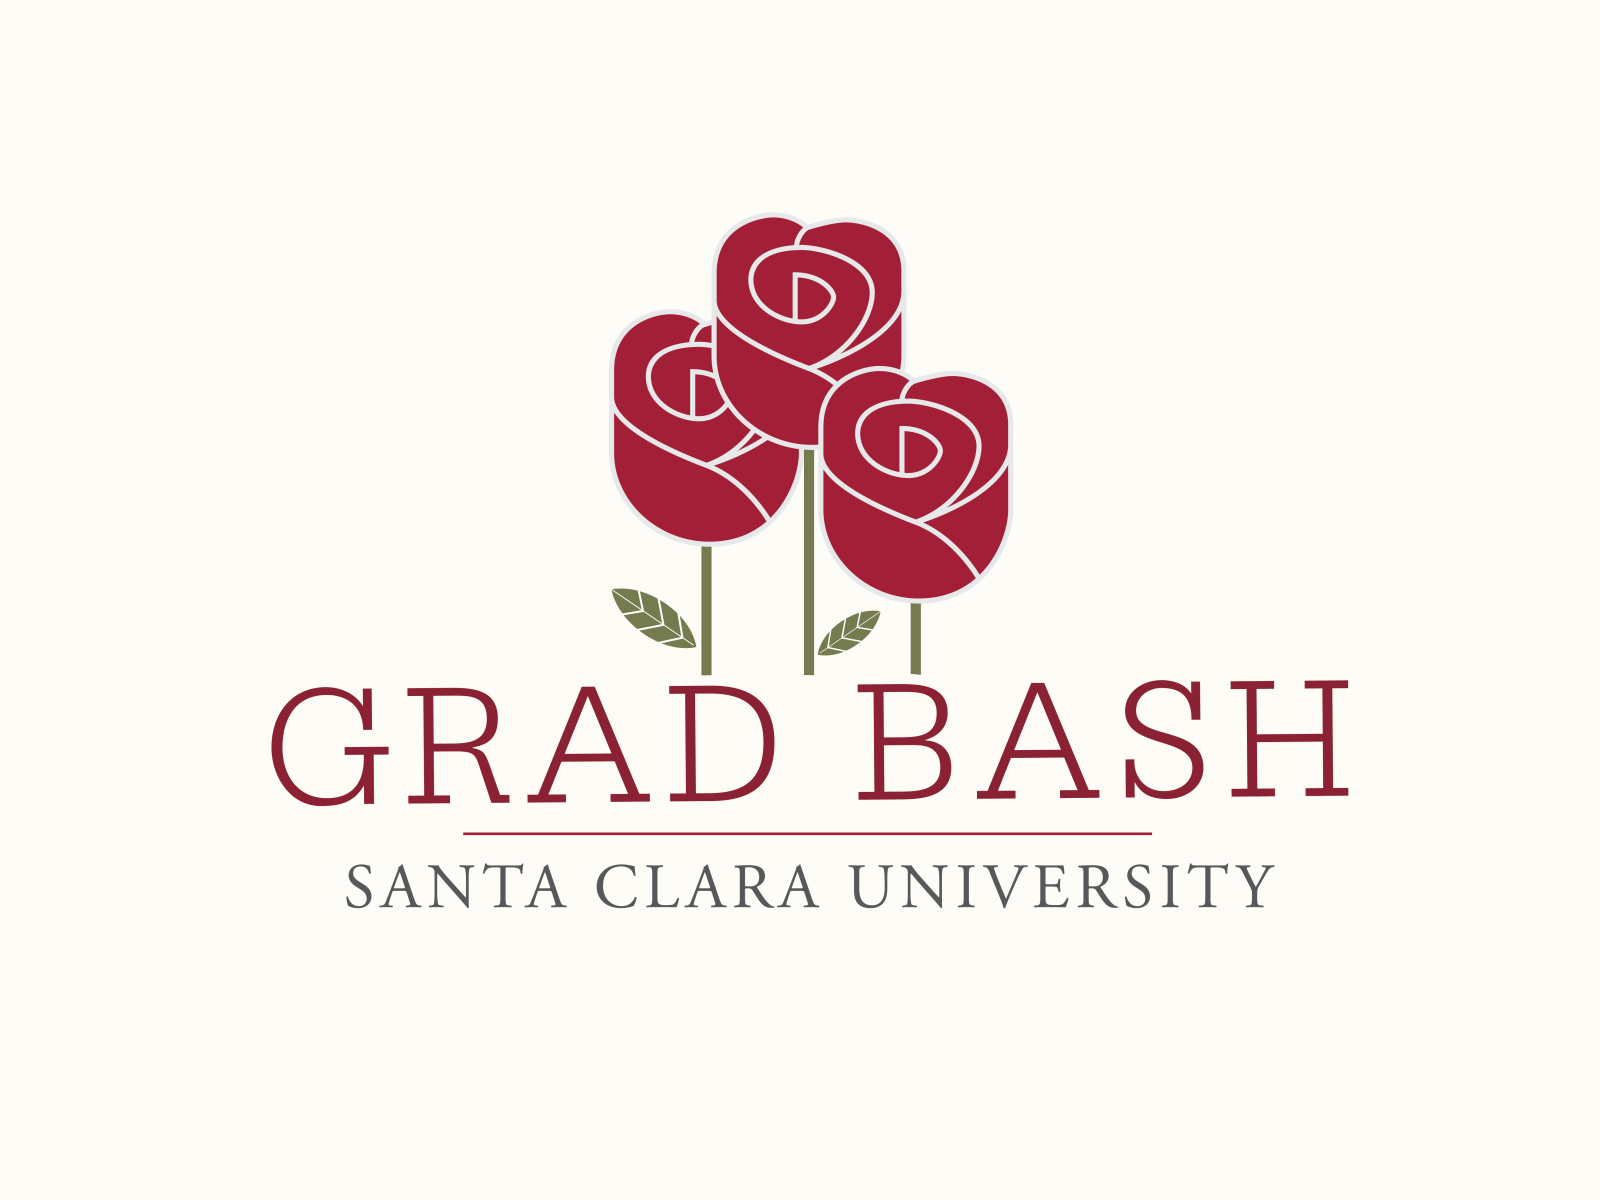 Grad Bash logo WIP by Blake Ferguson on Dribbble